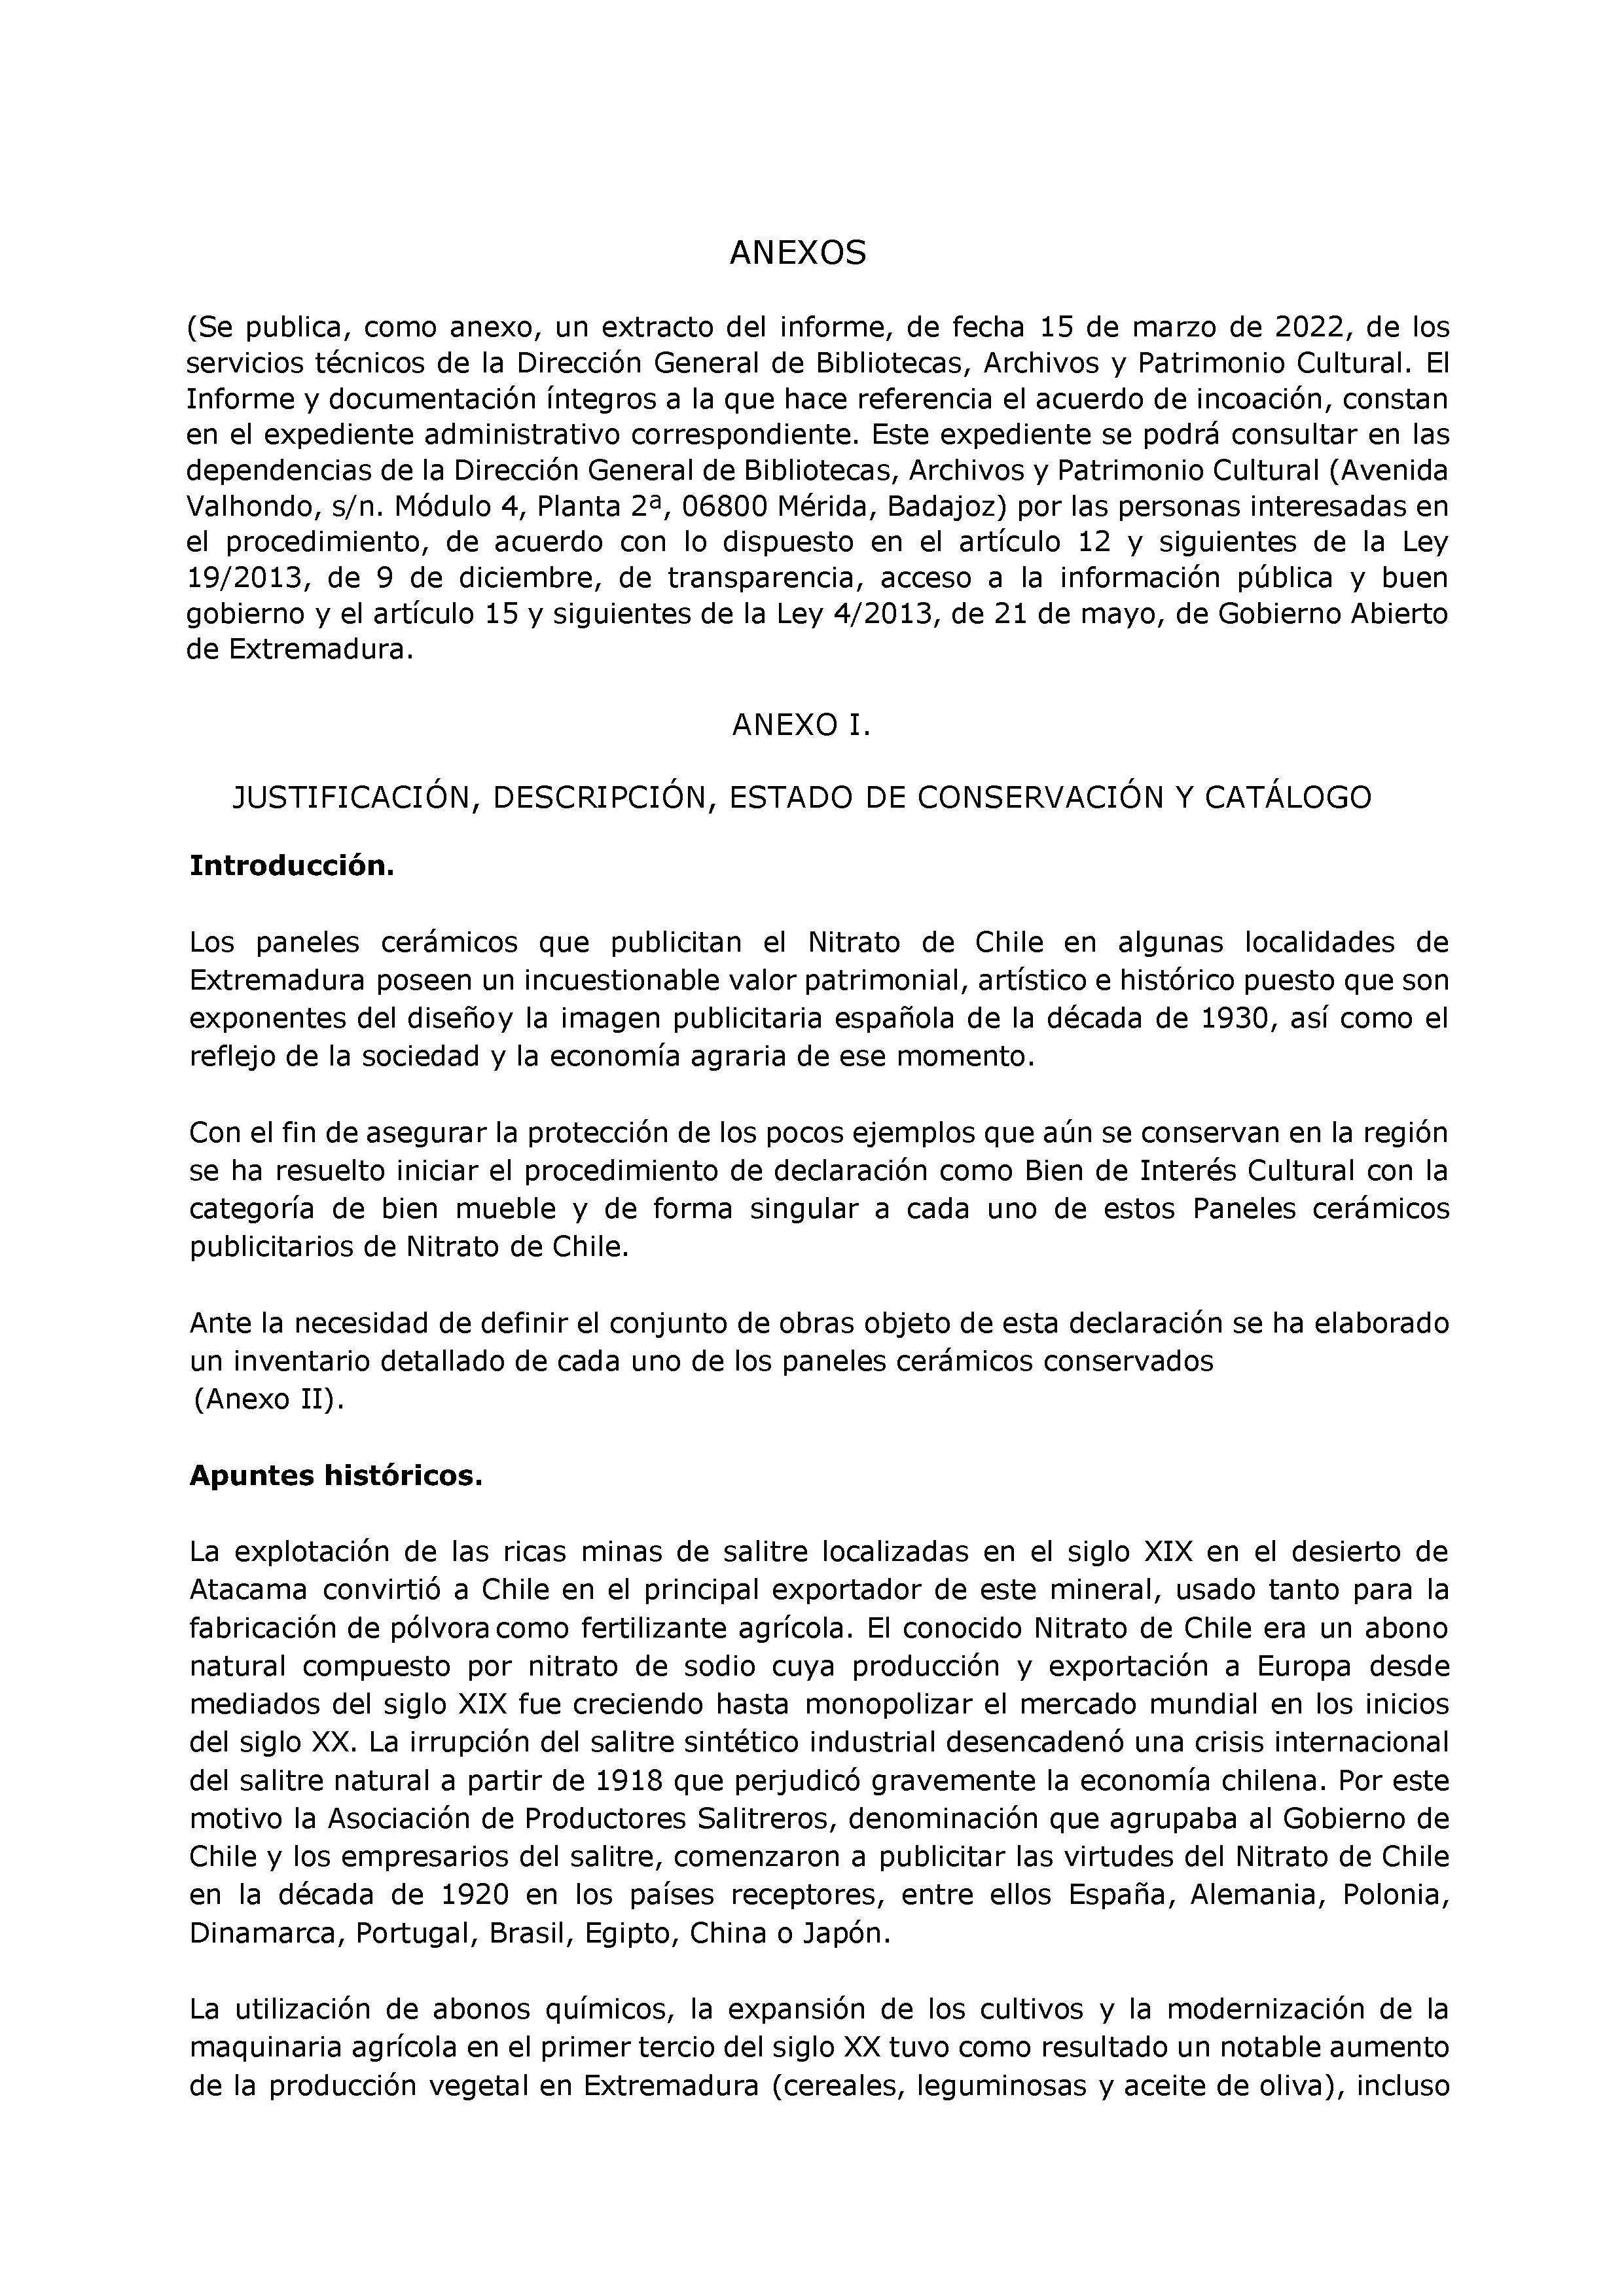 ANEXO JUSTIFICACION, DESCRIPCION, ESTADO DE CONSERVACION Y CATALOGO Pag 1